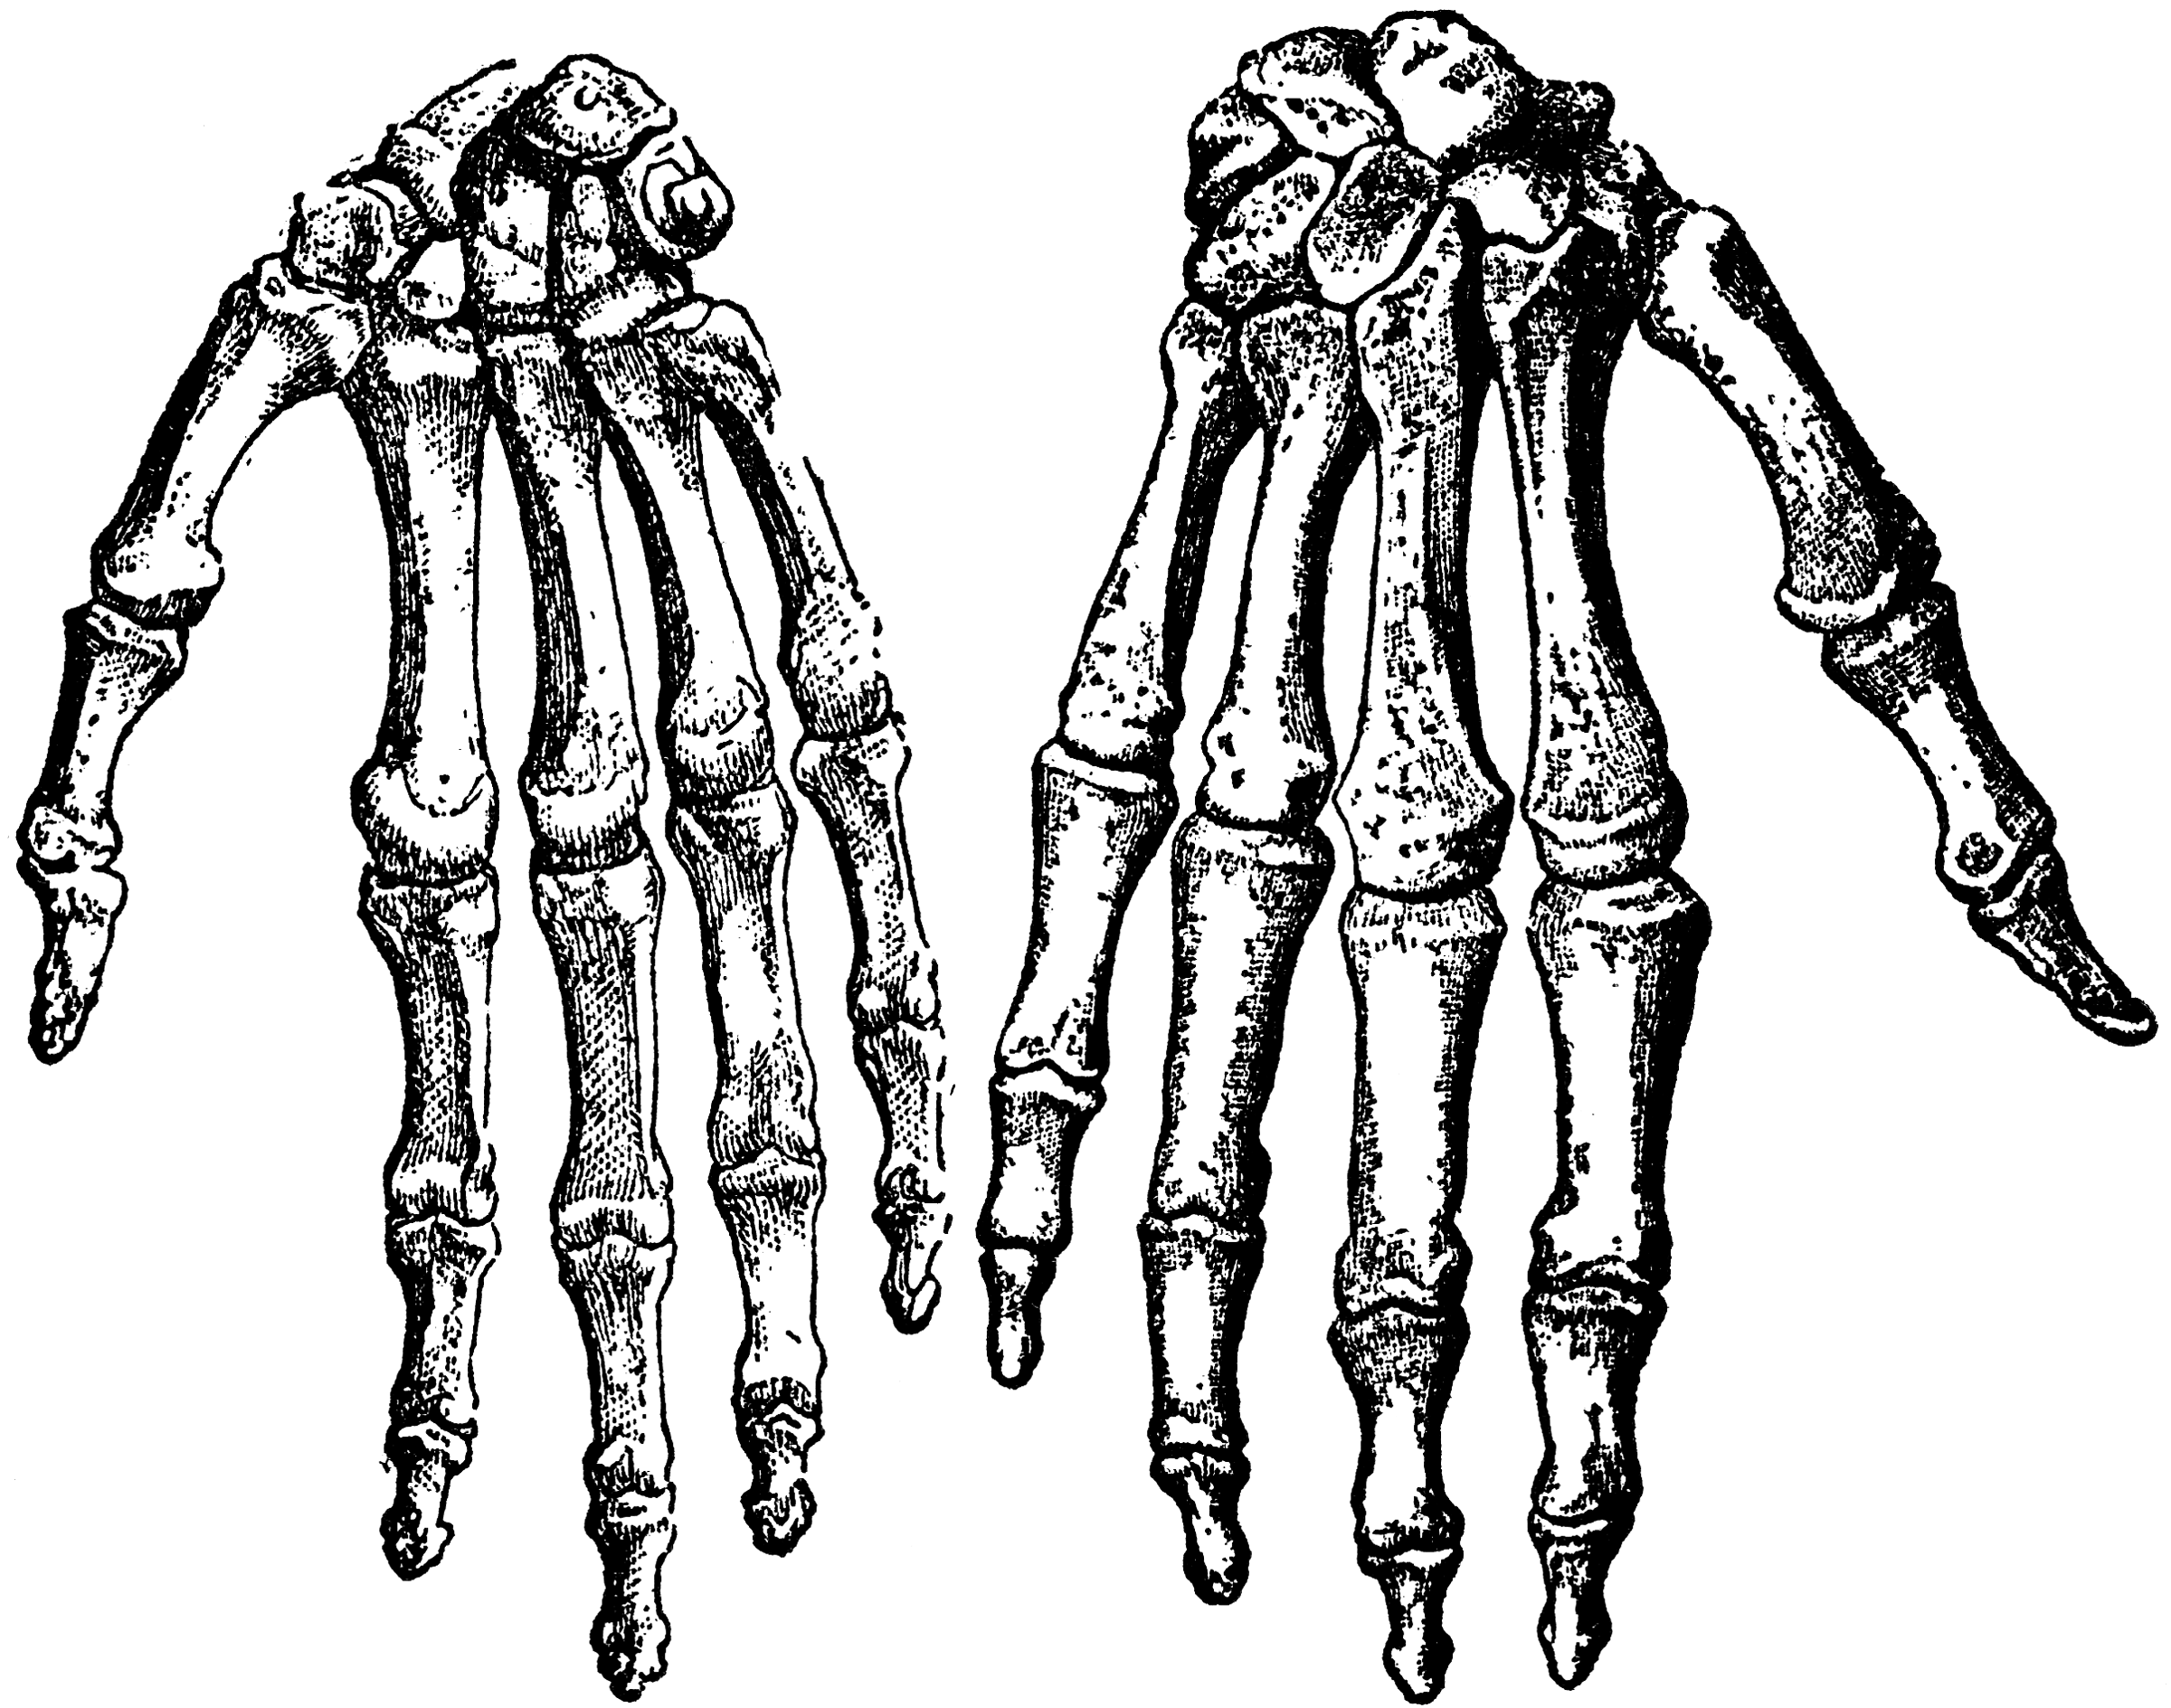 Выберите три верно обозначенные подписи к рисунку на котором изображено строение скелета руки